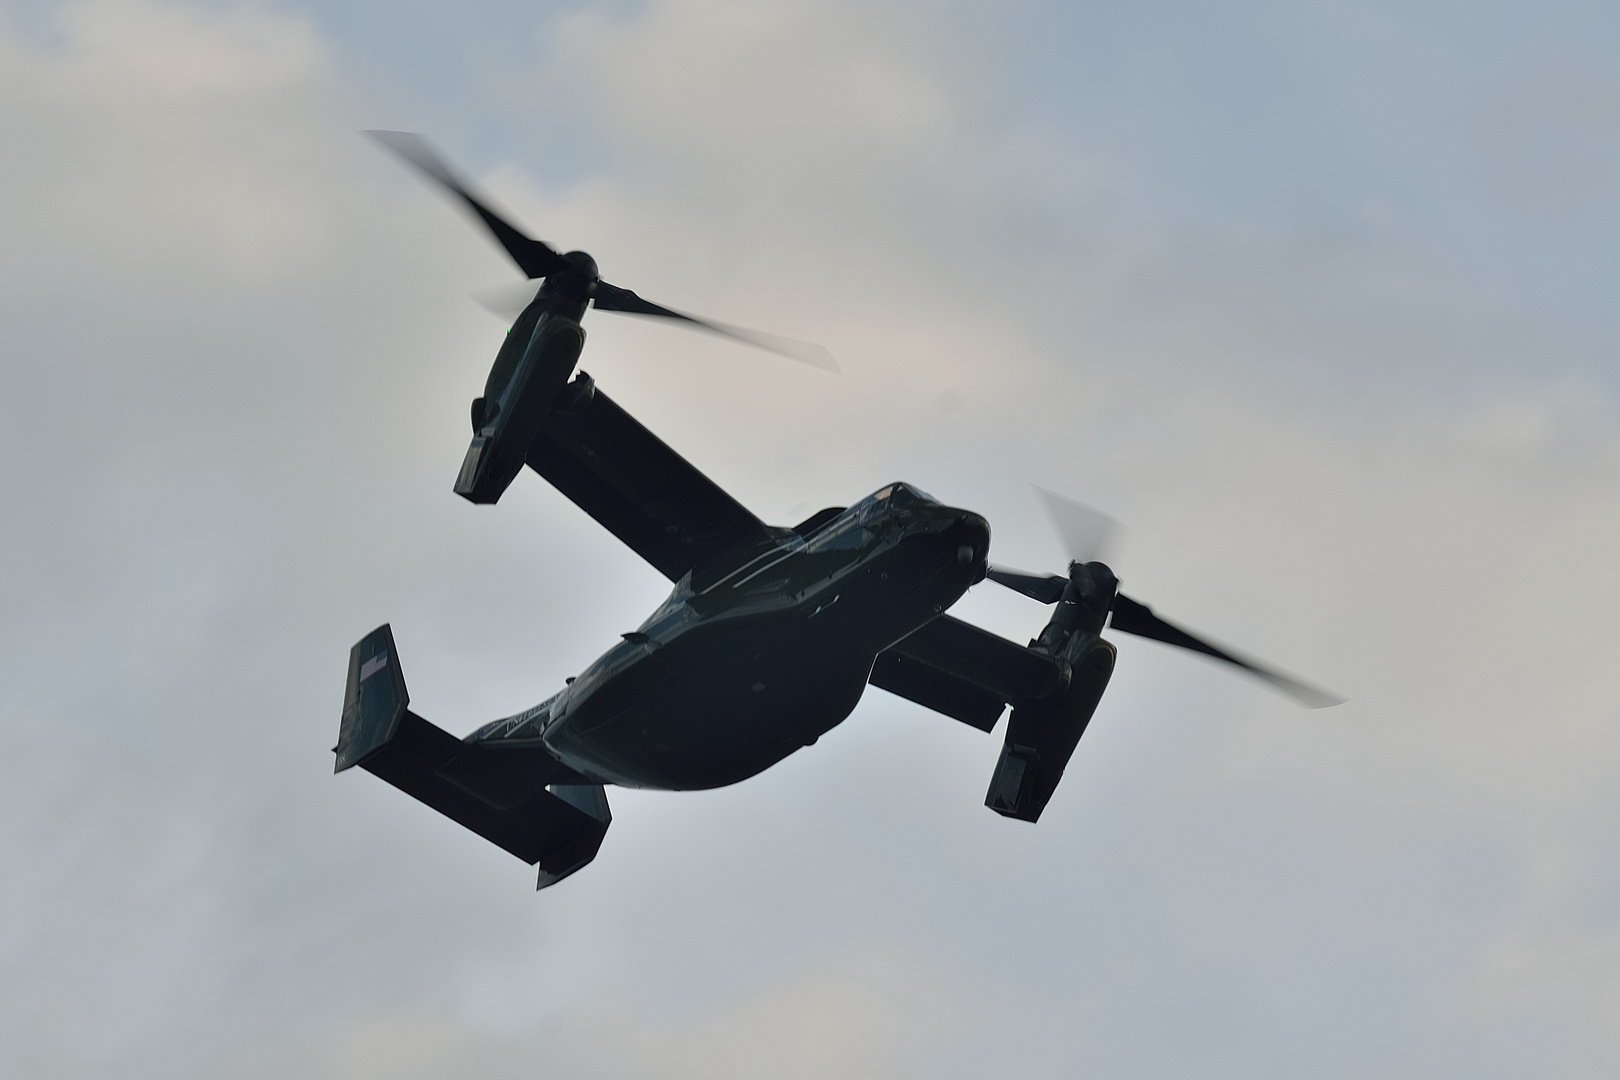 Bell-Boeing V-22 Osprey